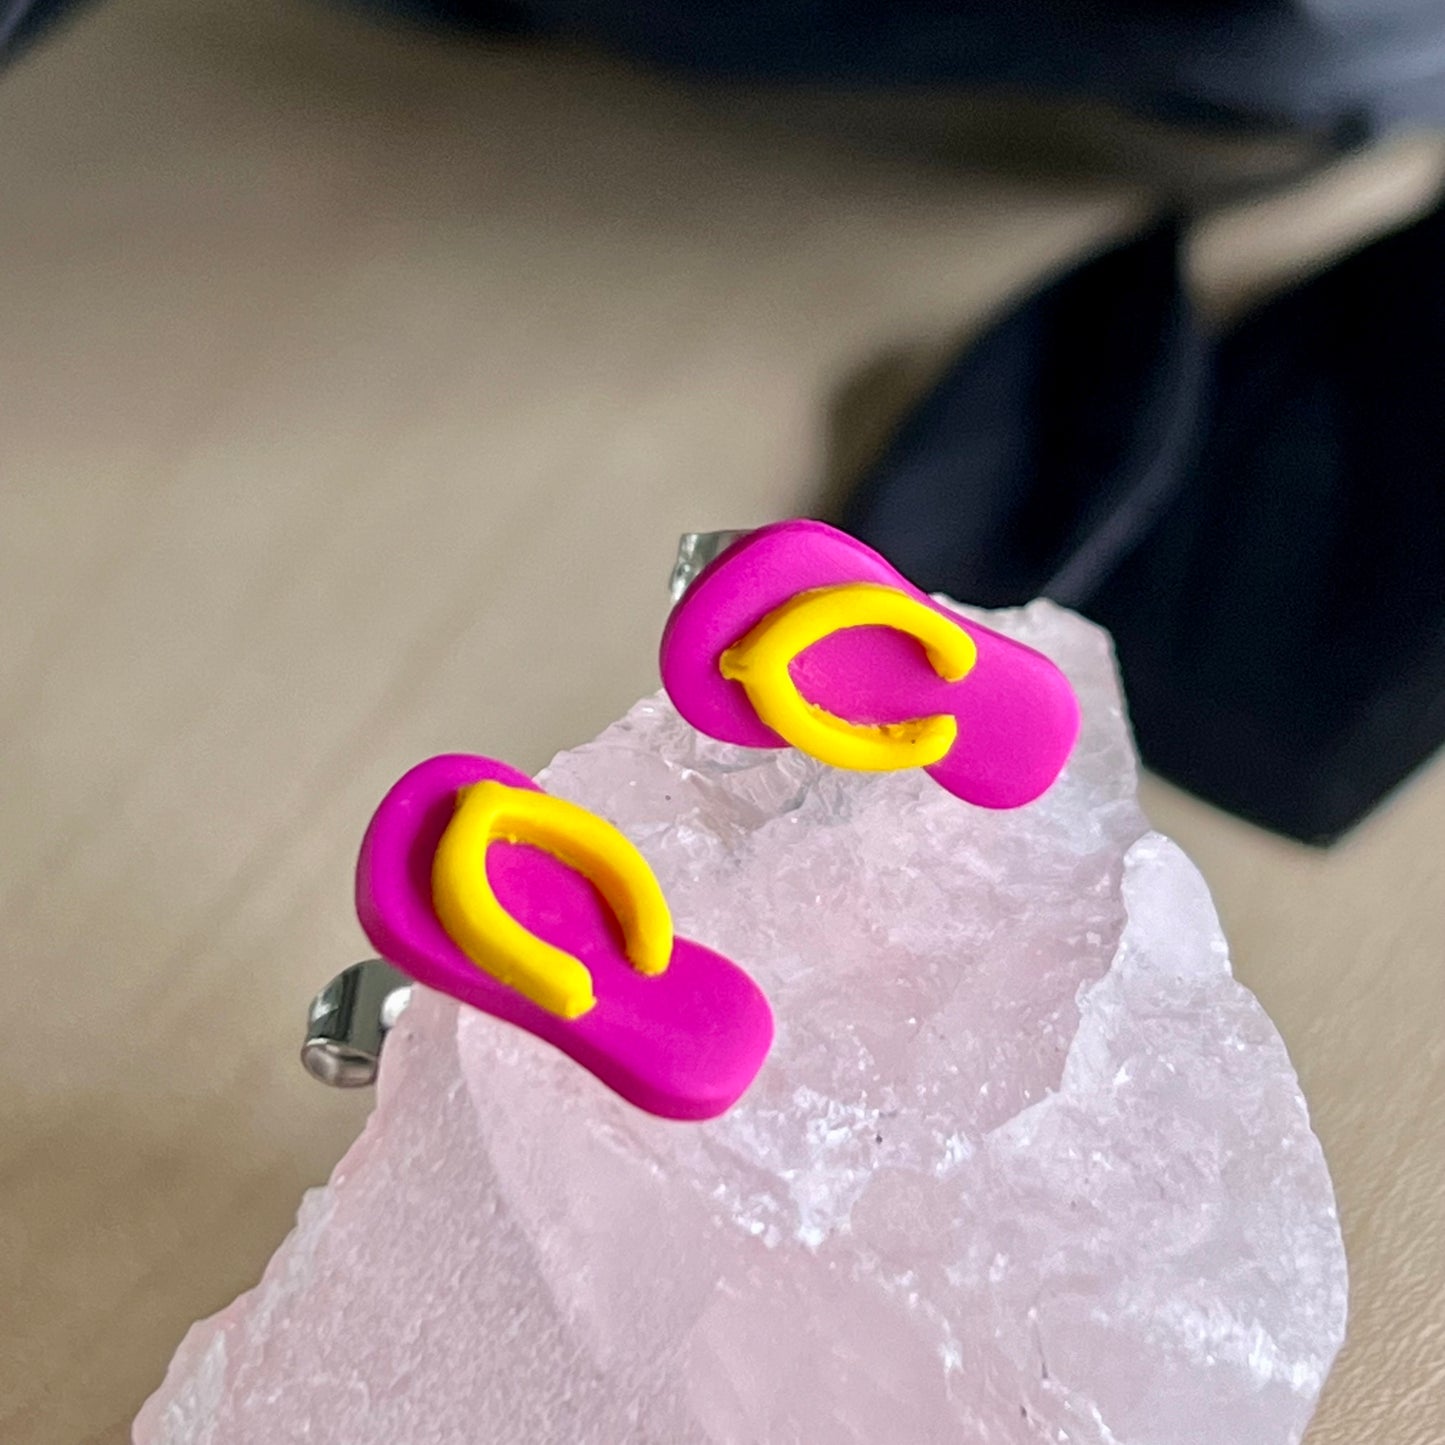 Thongs / flip flops studs, dark pink with yellow, handmade earrings